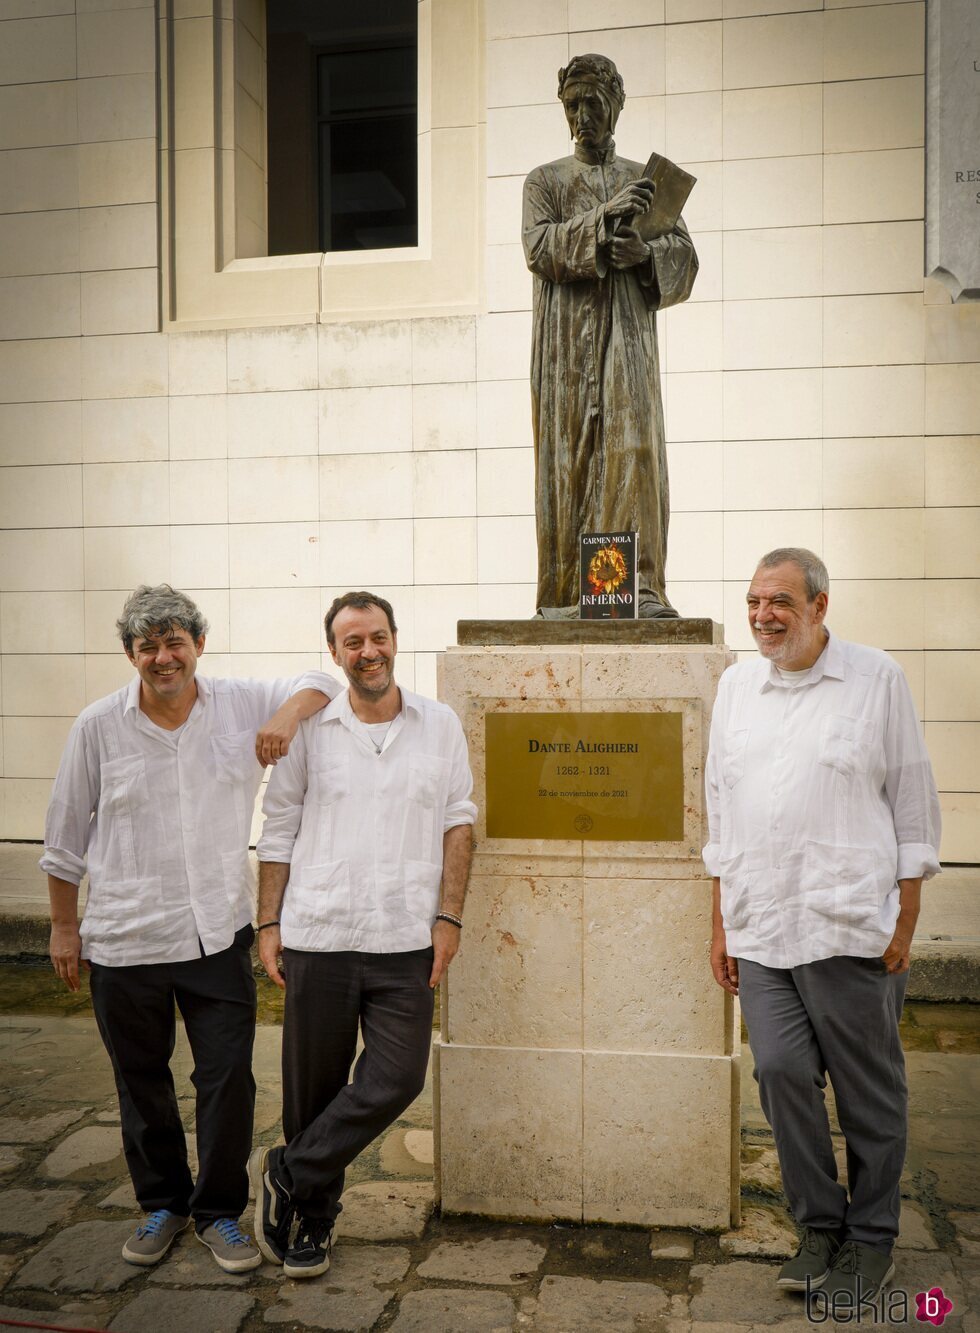 Carmen Mola con la estatua de Dante Alighieri en La Habana